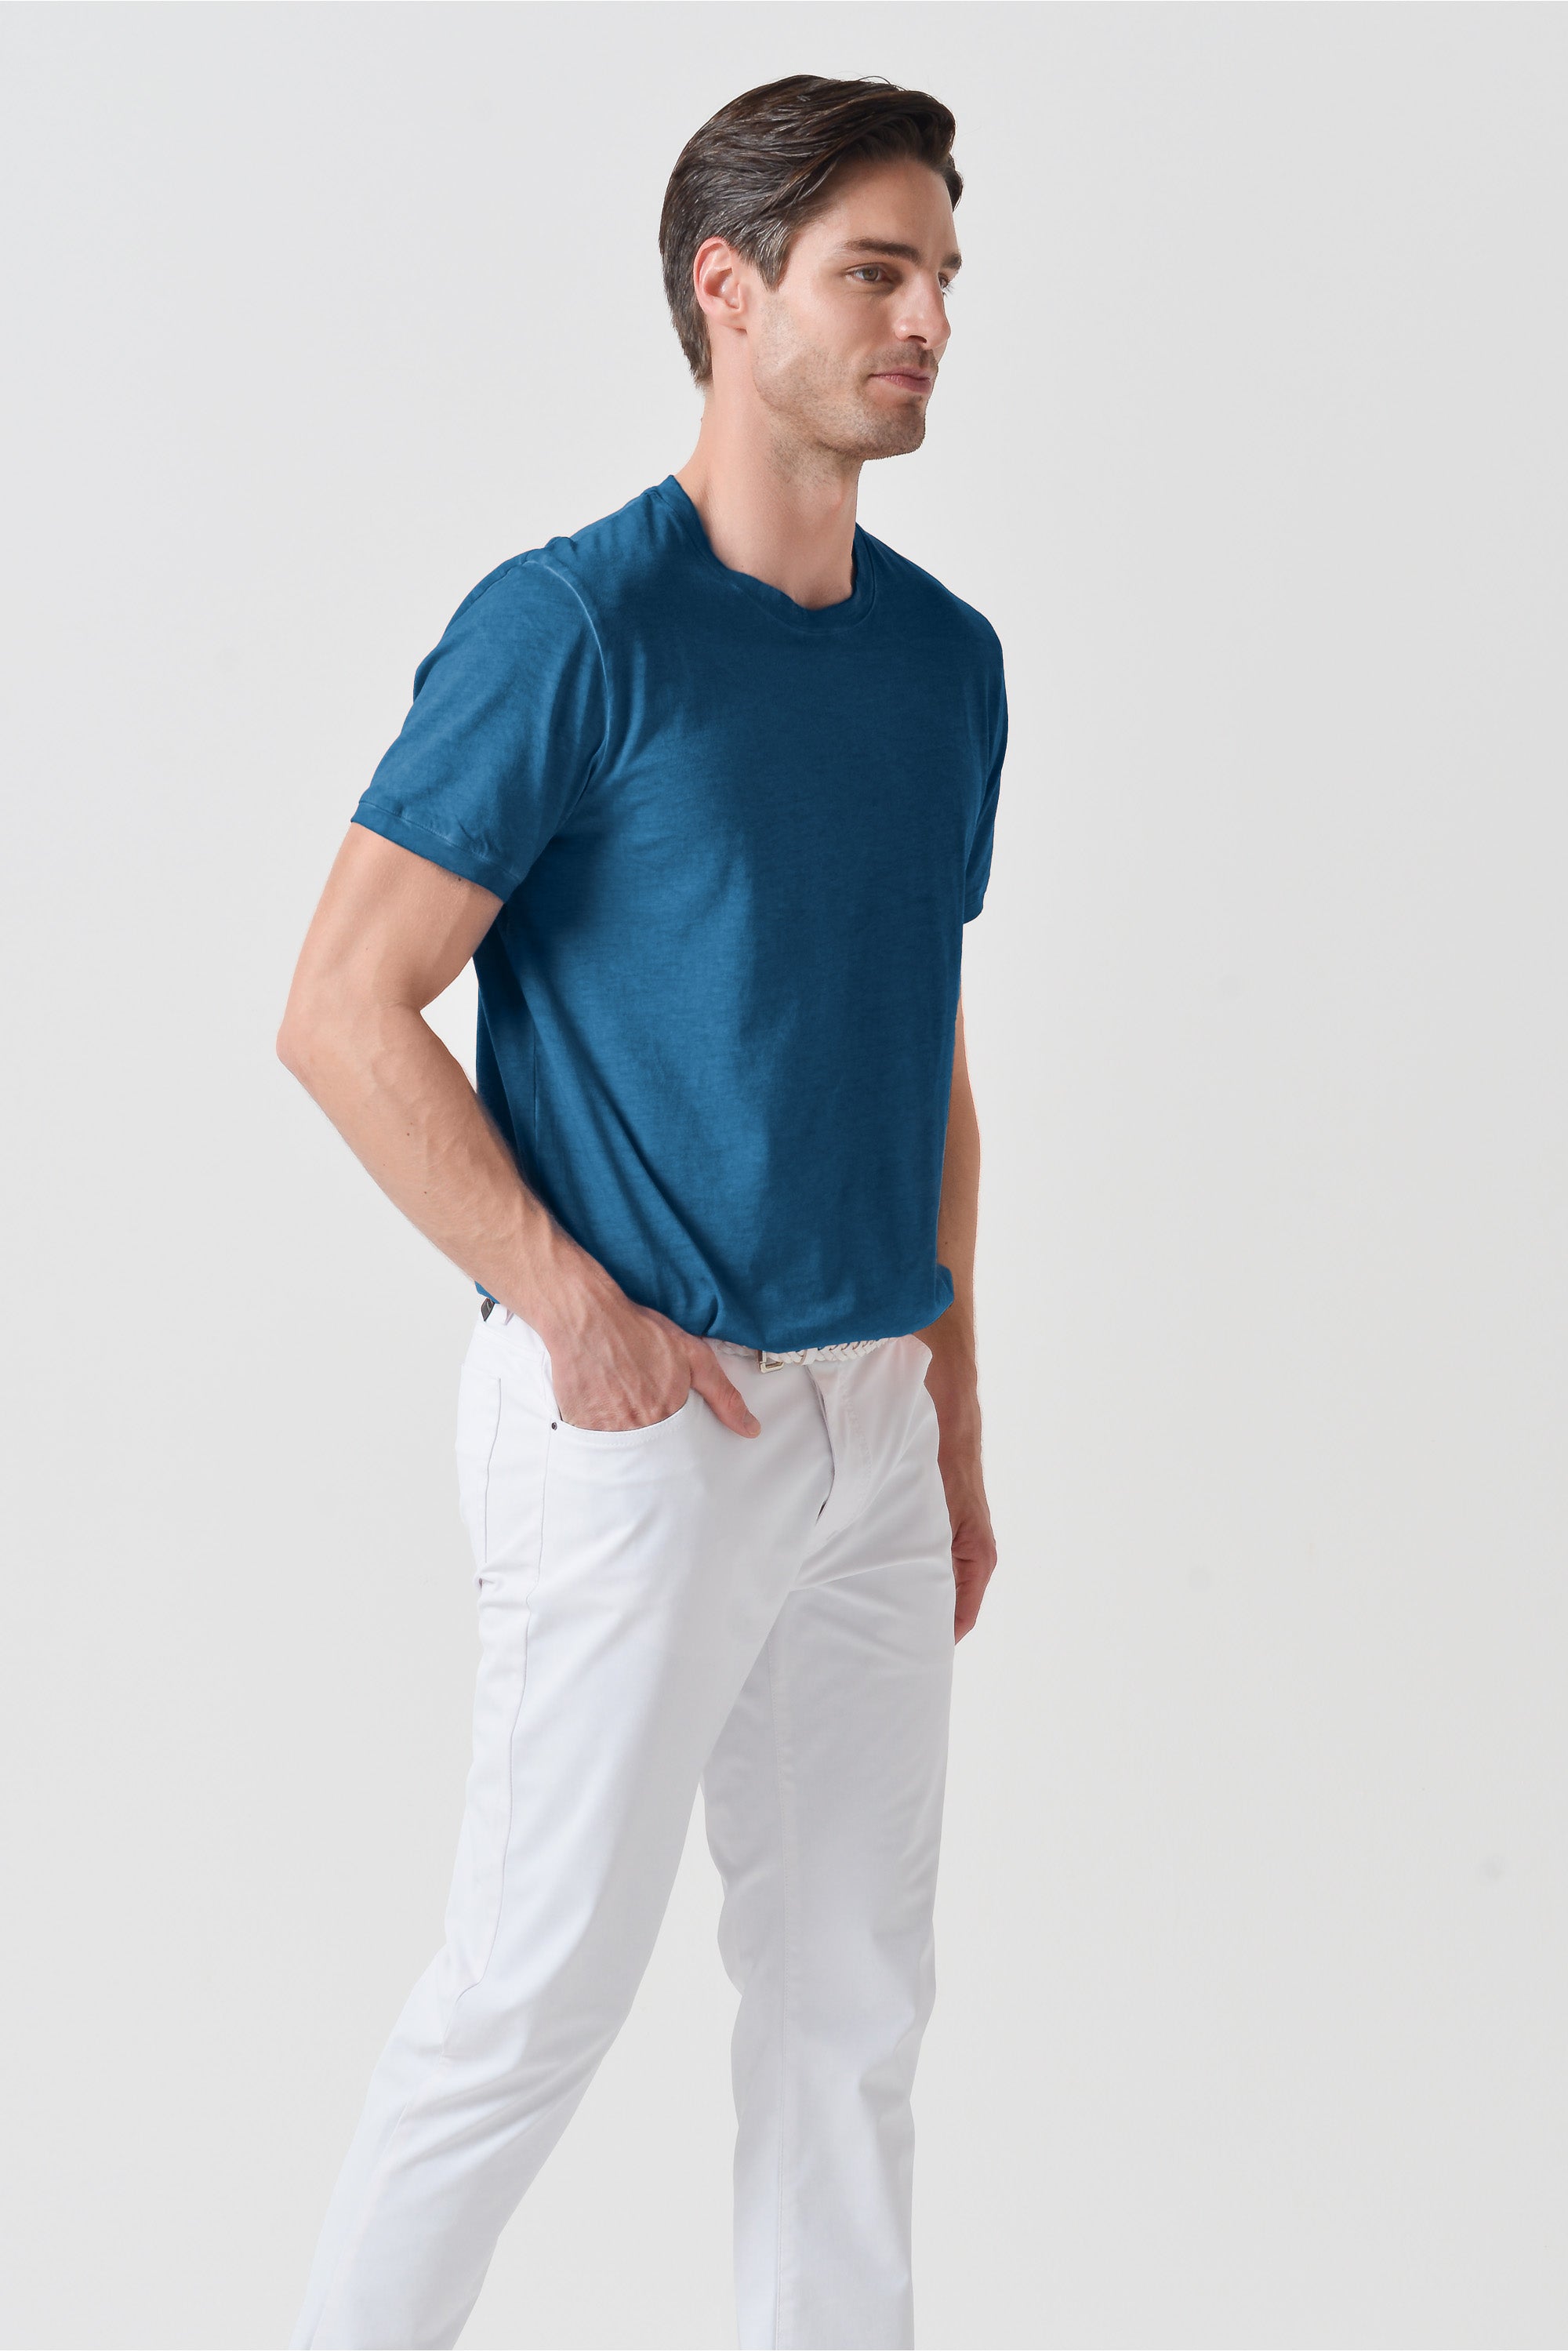 T-shirt smart casual in cotone - Profondo